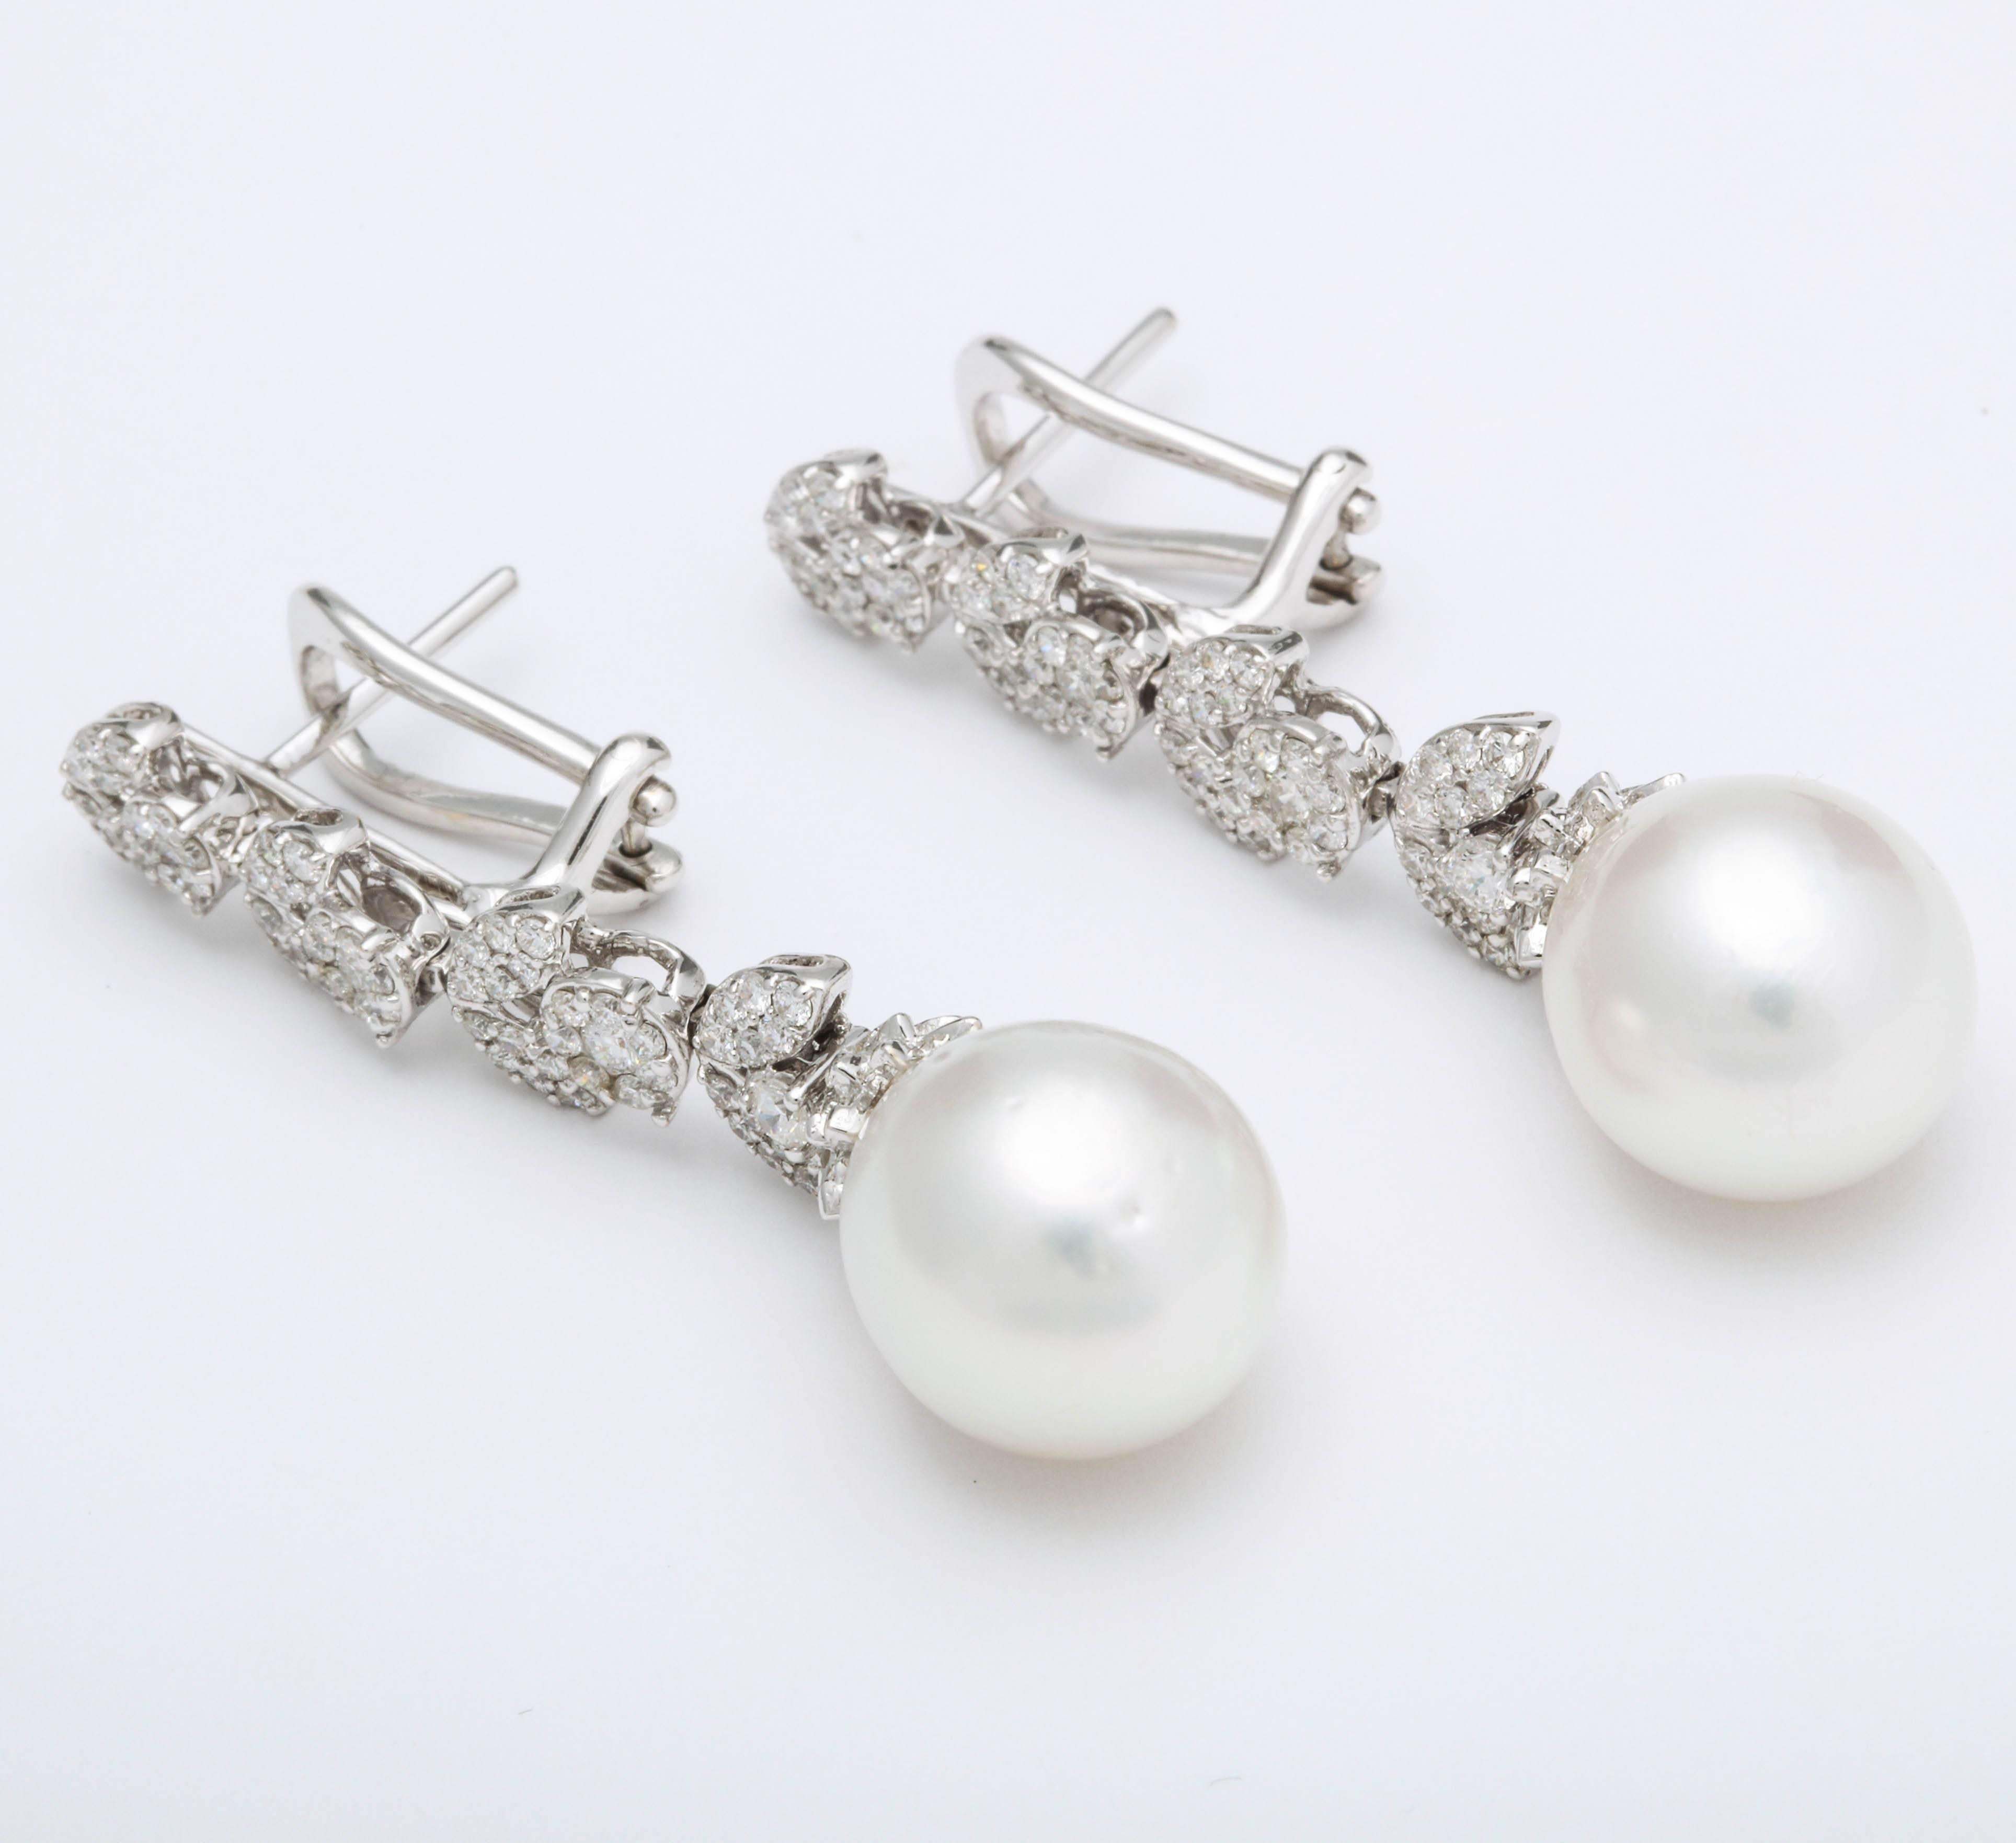 
Ein elegantes Paar Ohrringe mit Perlen und Diamanten, die an einem Ohrring baumeln. 

1,50 Karat runde weiße Diamanten im Brillantschliff, gefasst in runde und marquise Formen, mit einer Perle als Tropfen.

18k Weißgold 

Ungefähr 1.6 Zoll